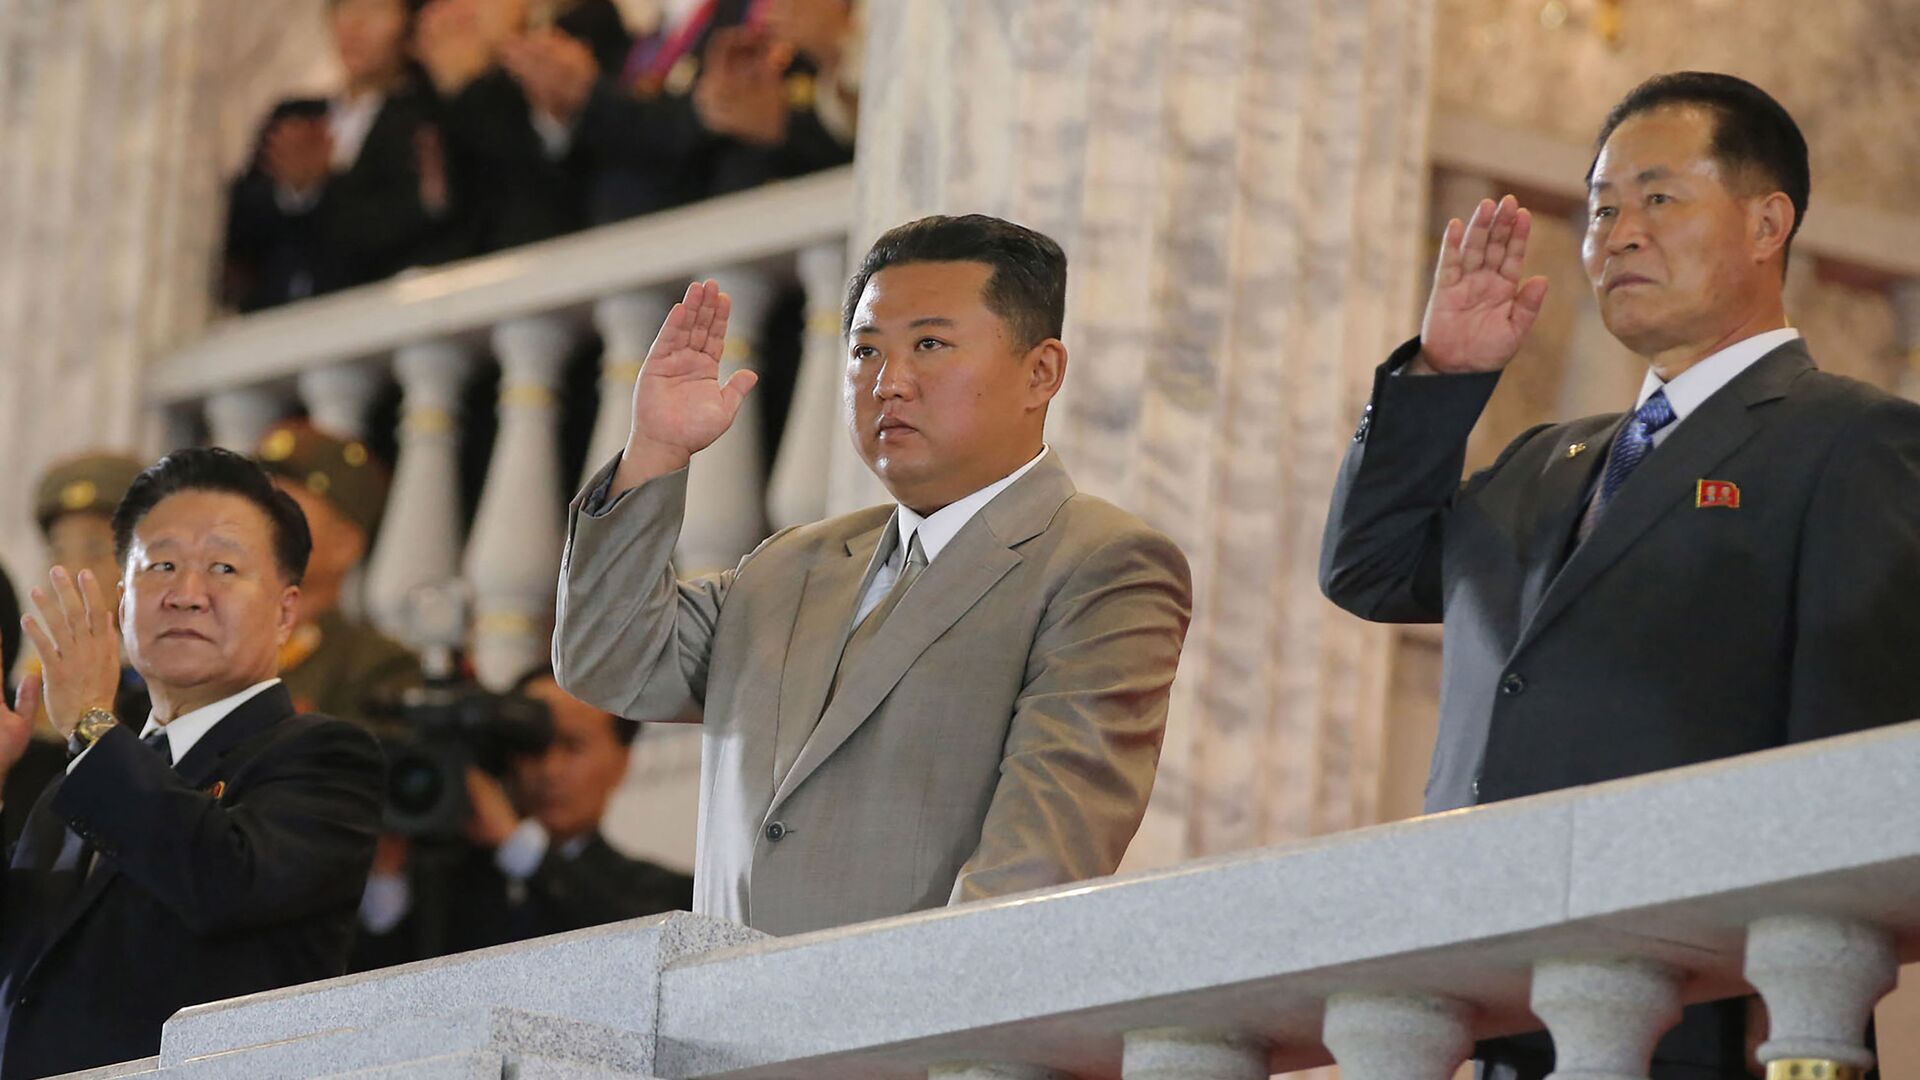  صورة نشرتها وكالة الأنباء المركزية الكورية الرسمية، وتظهر الزعيم الكوري الشمالي كيم جونغ أون يشارك في عرض عسكري للاحتفال بالذكرى الـ 73 لتأسيسها في بيونغ يانغ، 9 سبتمبر/ أيلول 2021 - سبوتنيك عربي, 1920, 13.10.2021